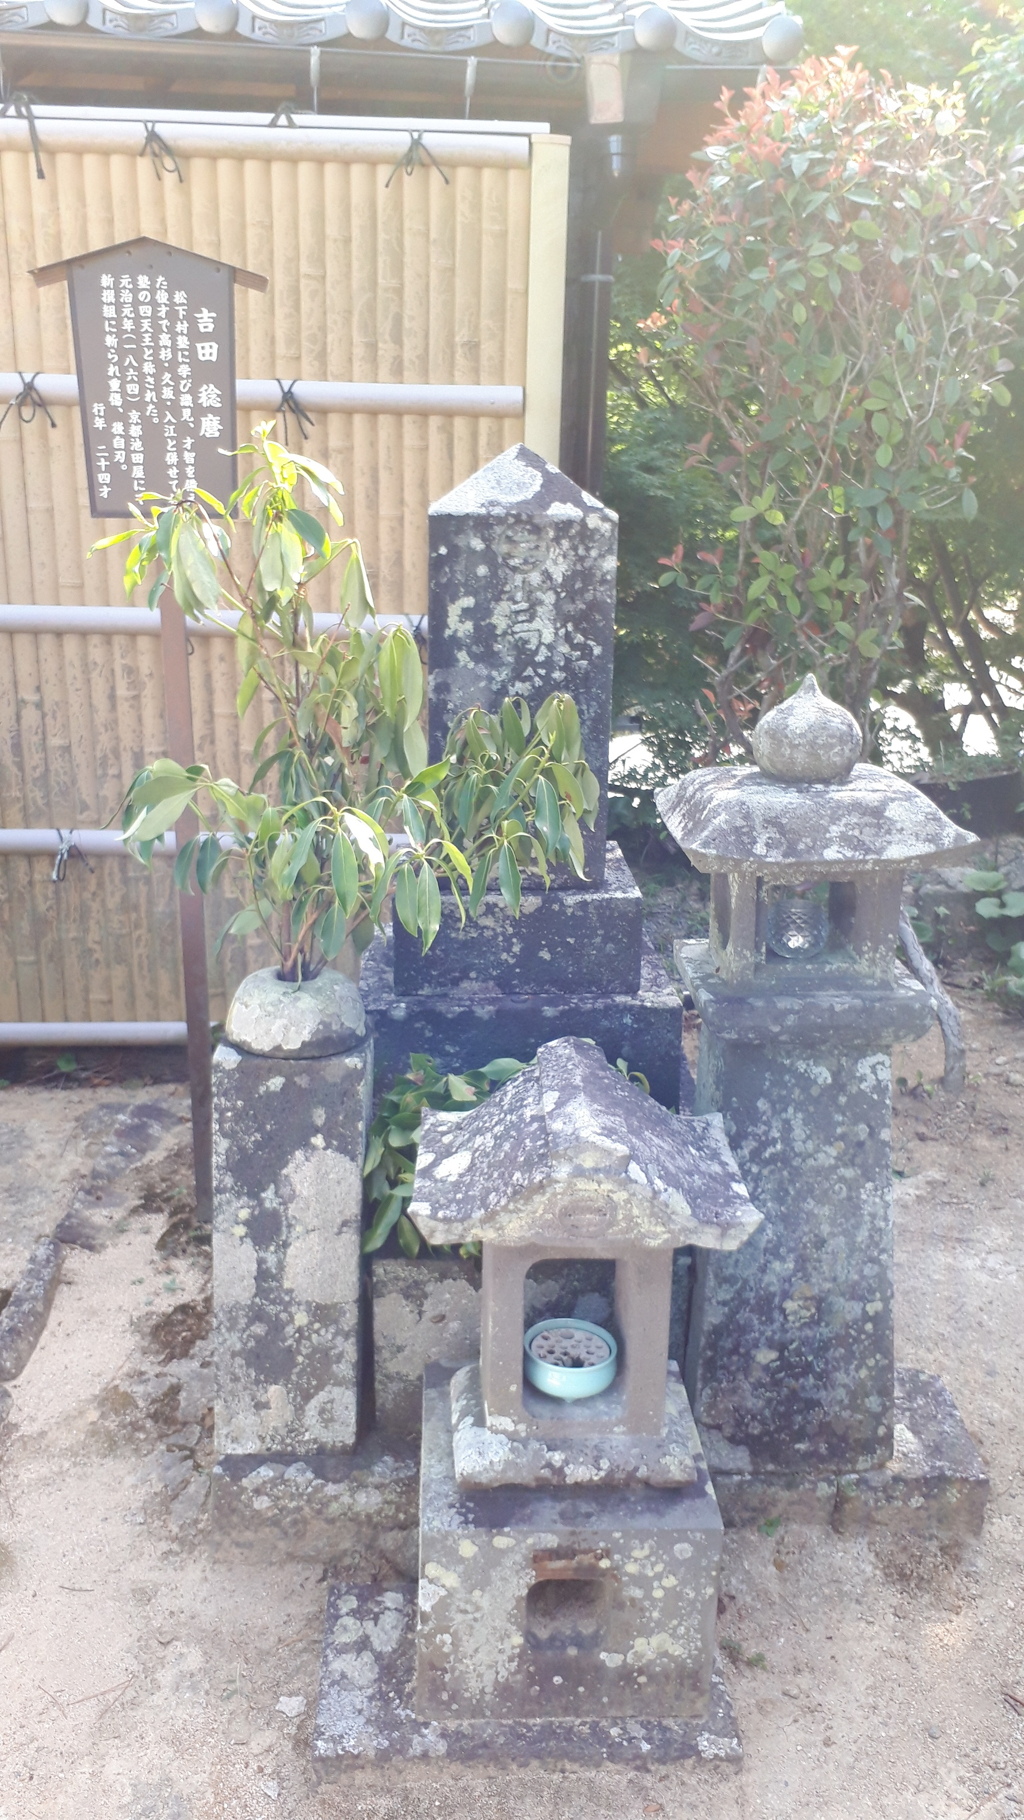 吉田稔麿の墓